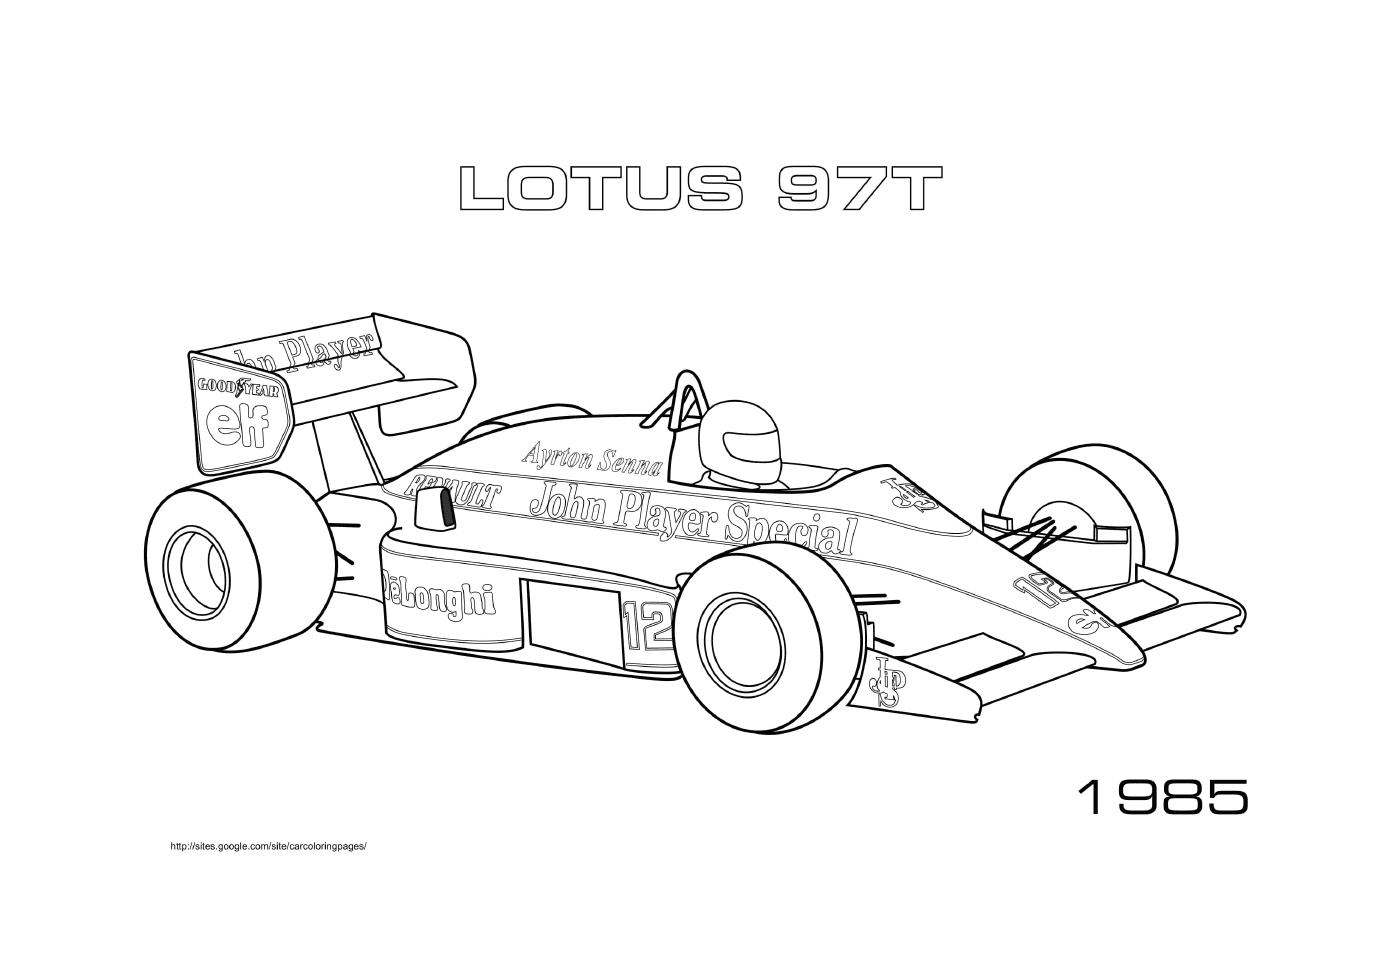  Desporto F1 Lotus 97t 1985 